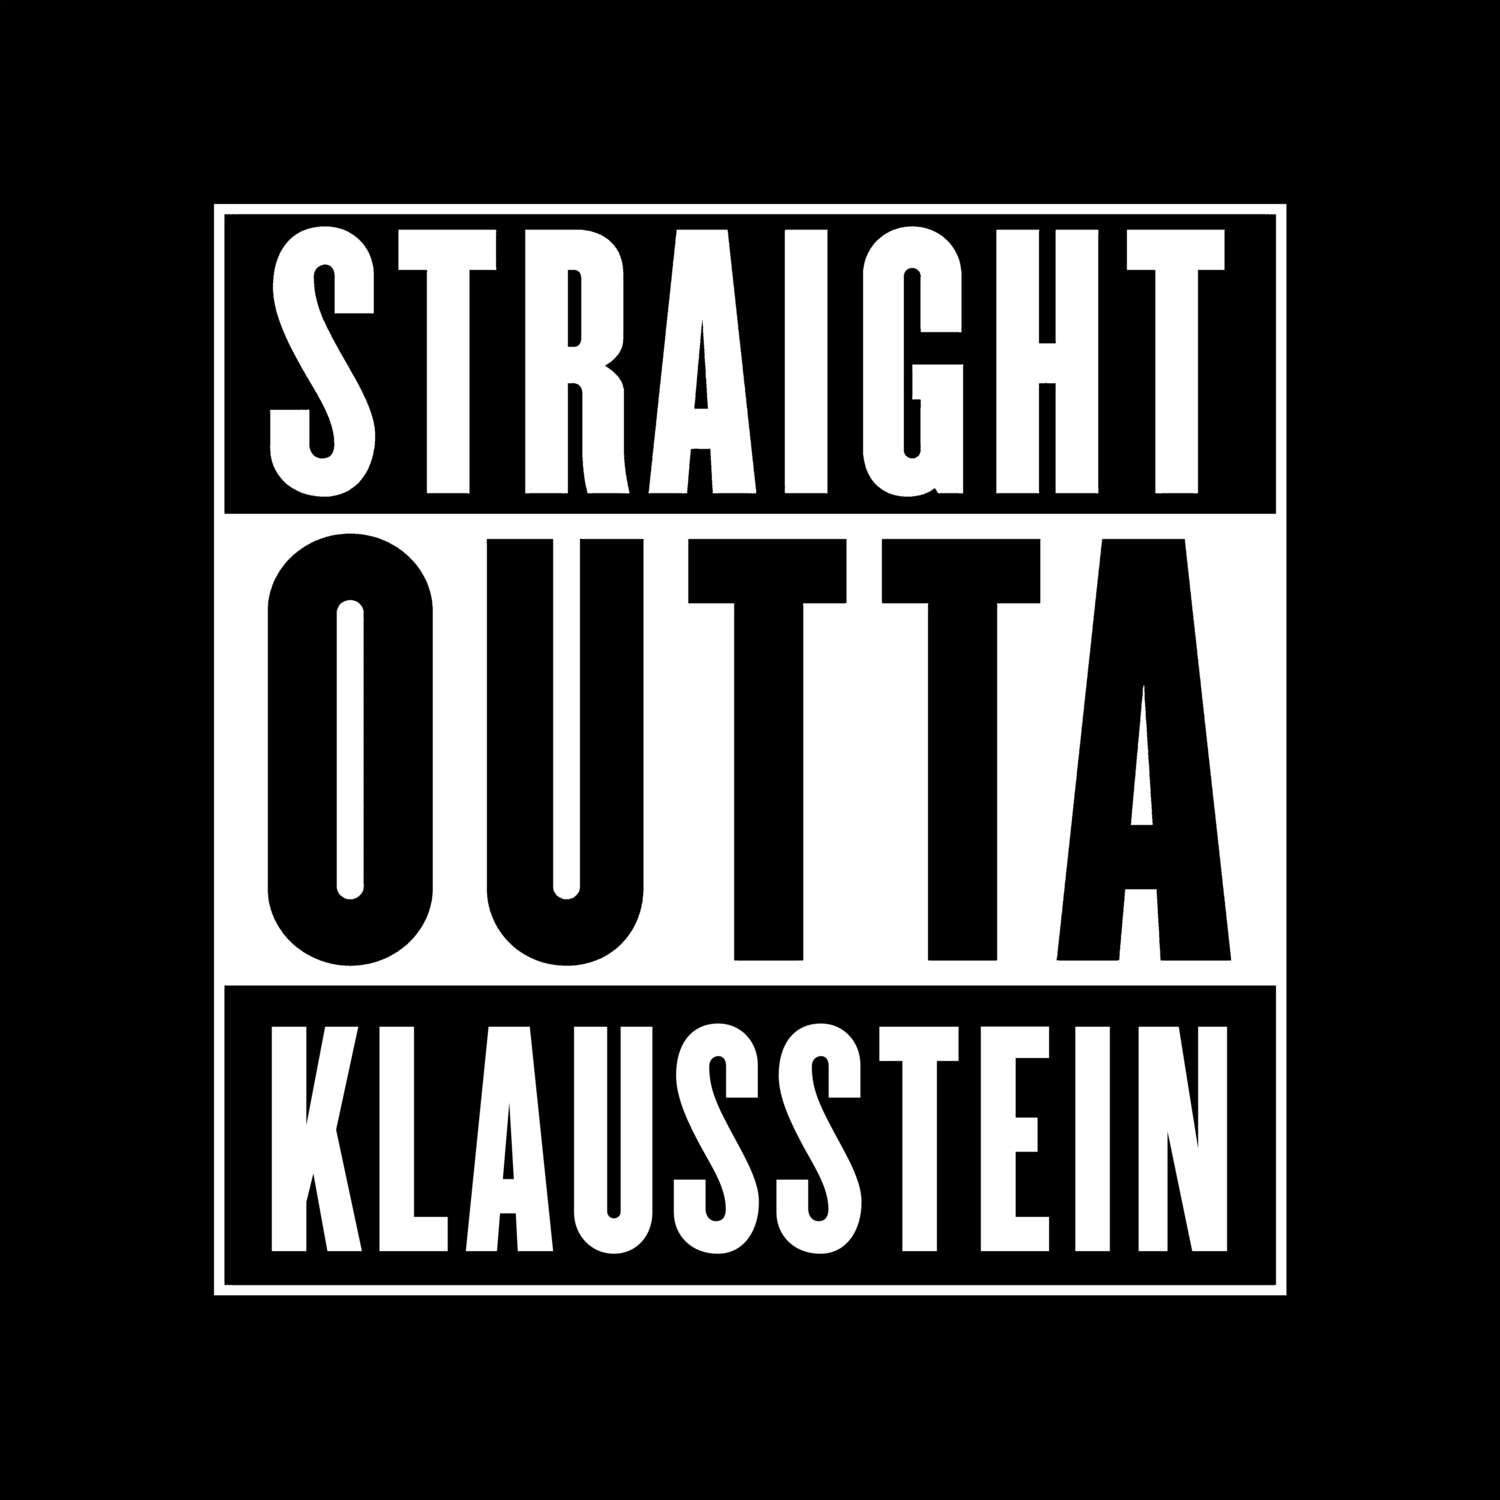 Klausstein T-Shirt »Straight Outta«